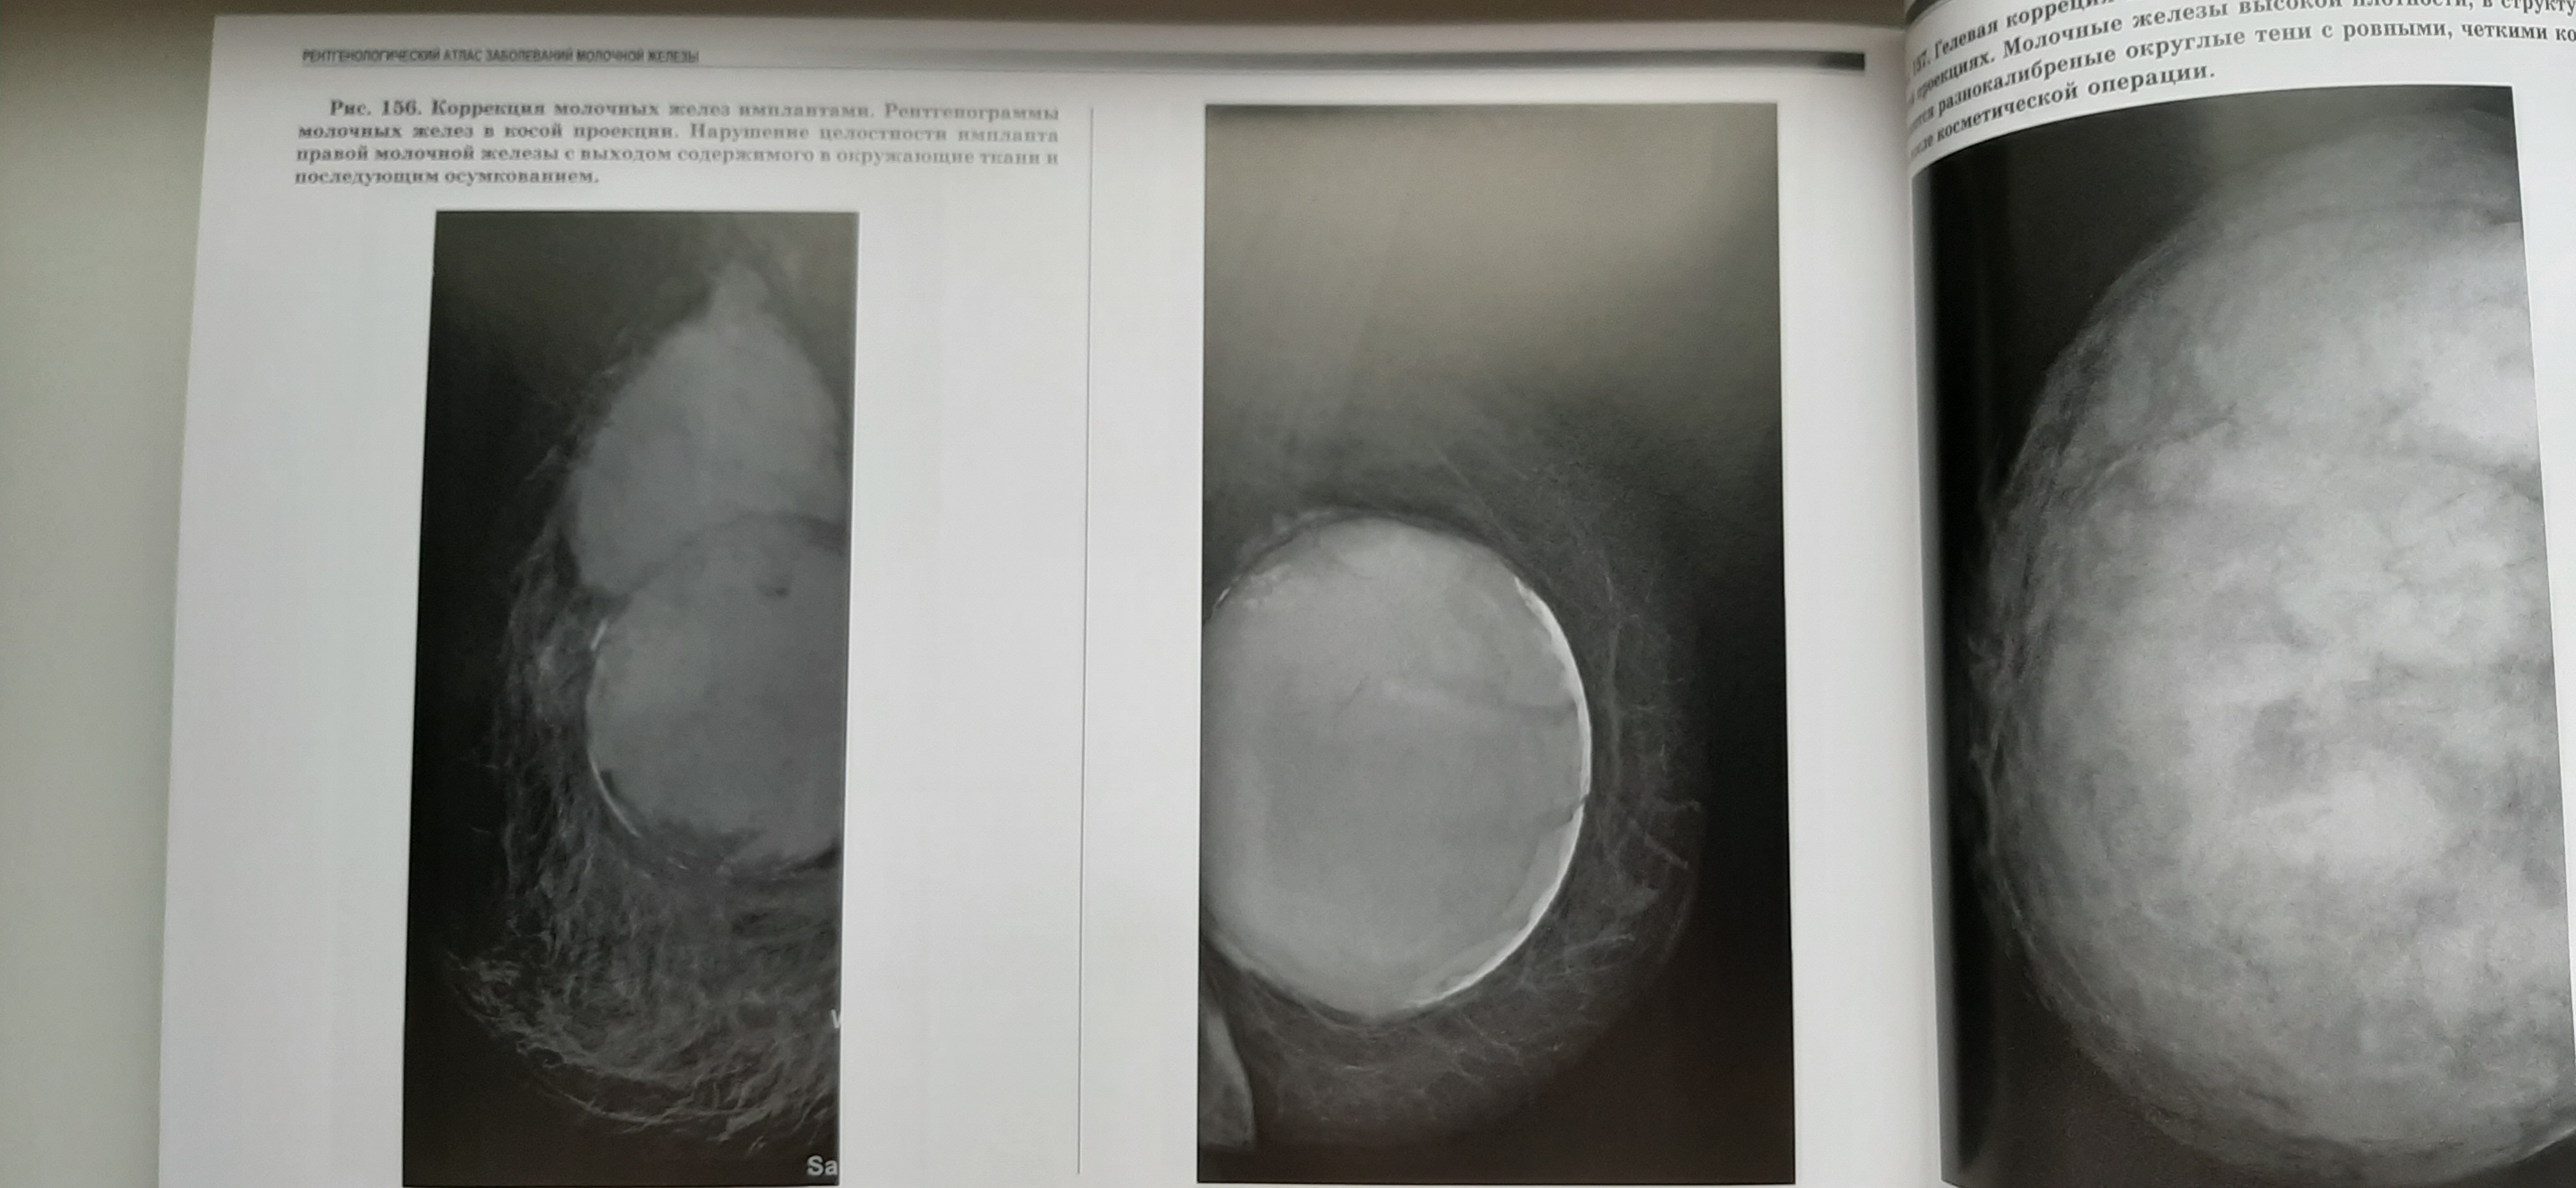 Рентгенологический атлас заболеваний молочной железы САМГМУ